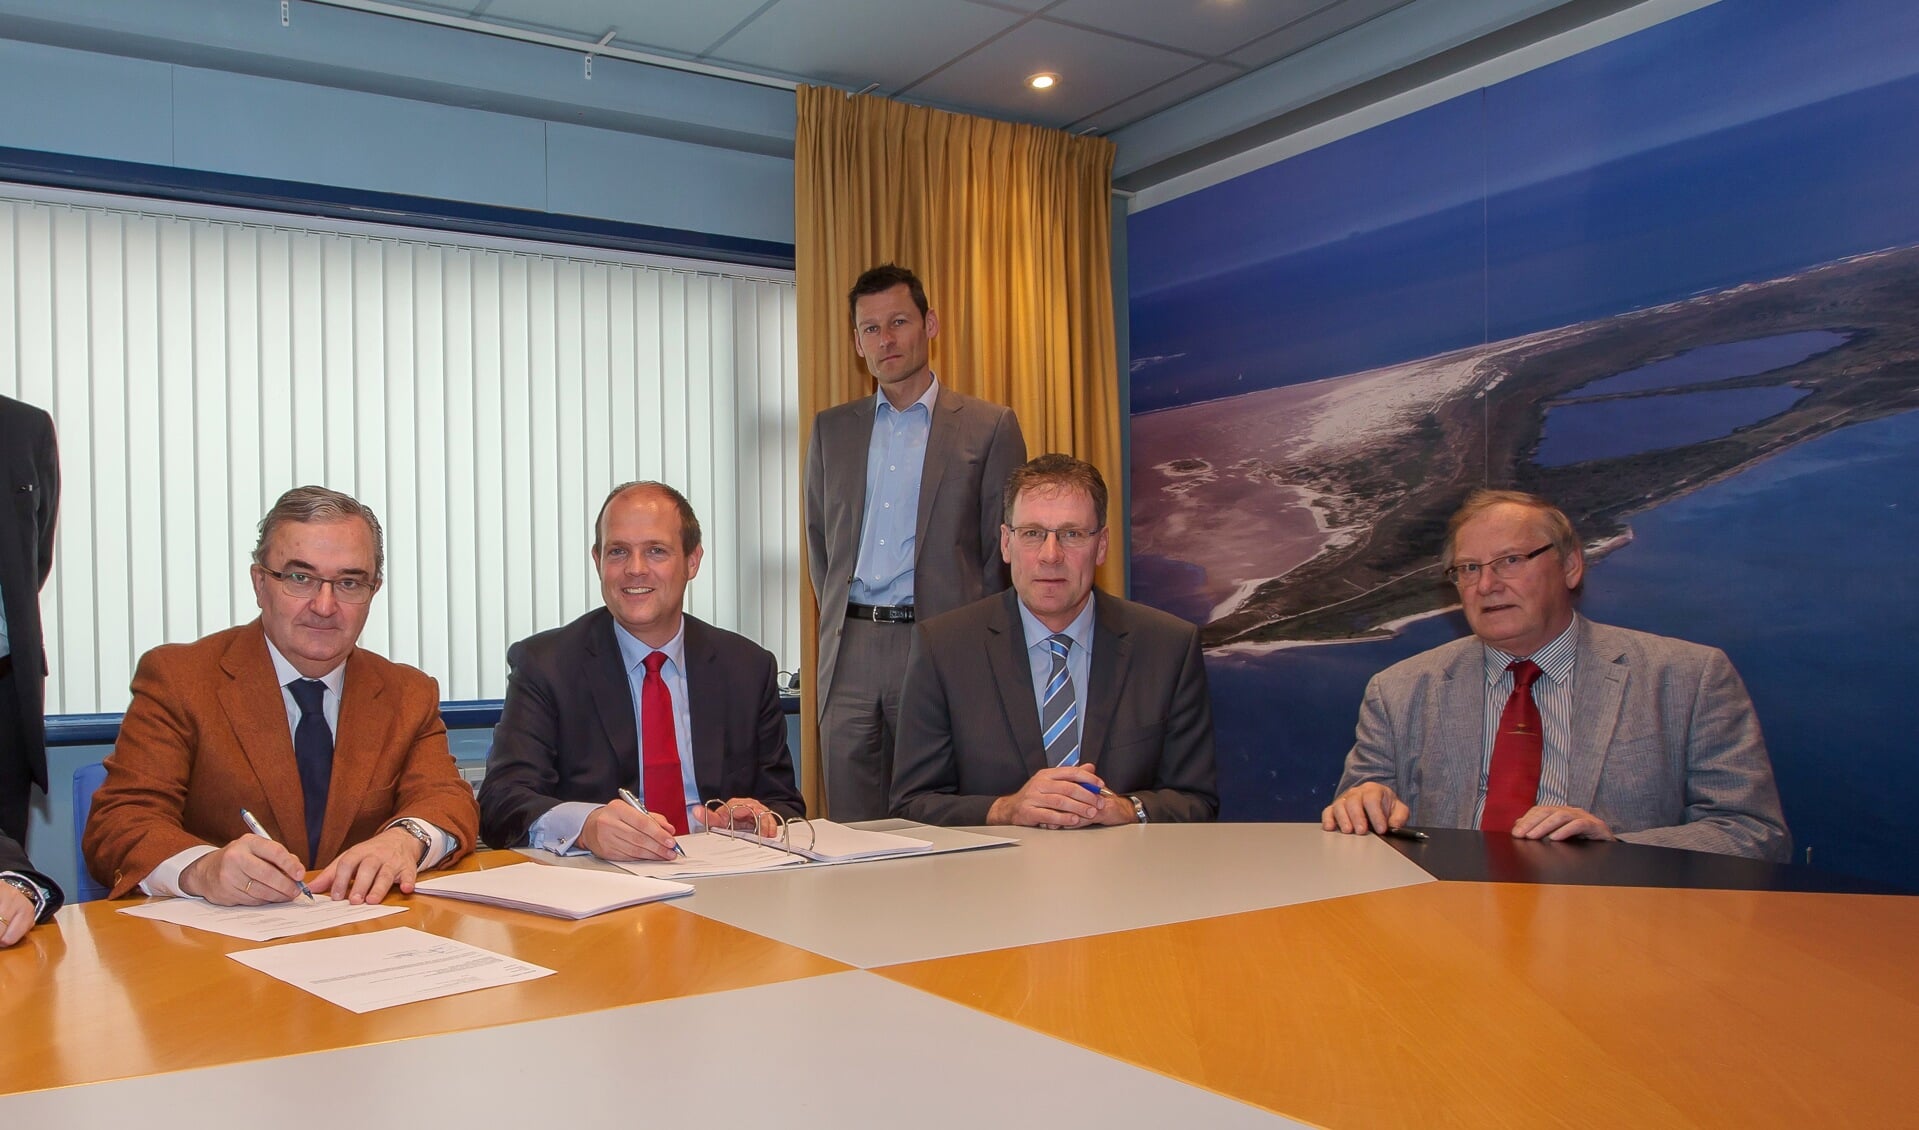 Ondertekening van het contract door bestuurders van LaNaval en  TESO.
(Foto Pieter de Vries)